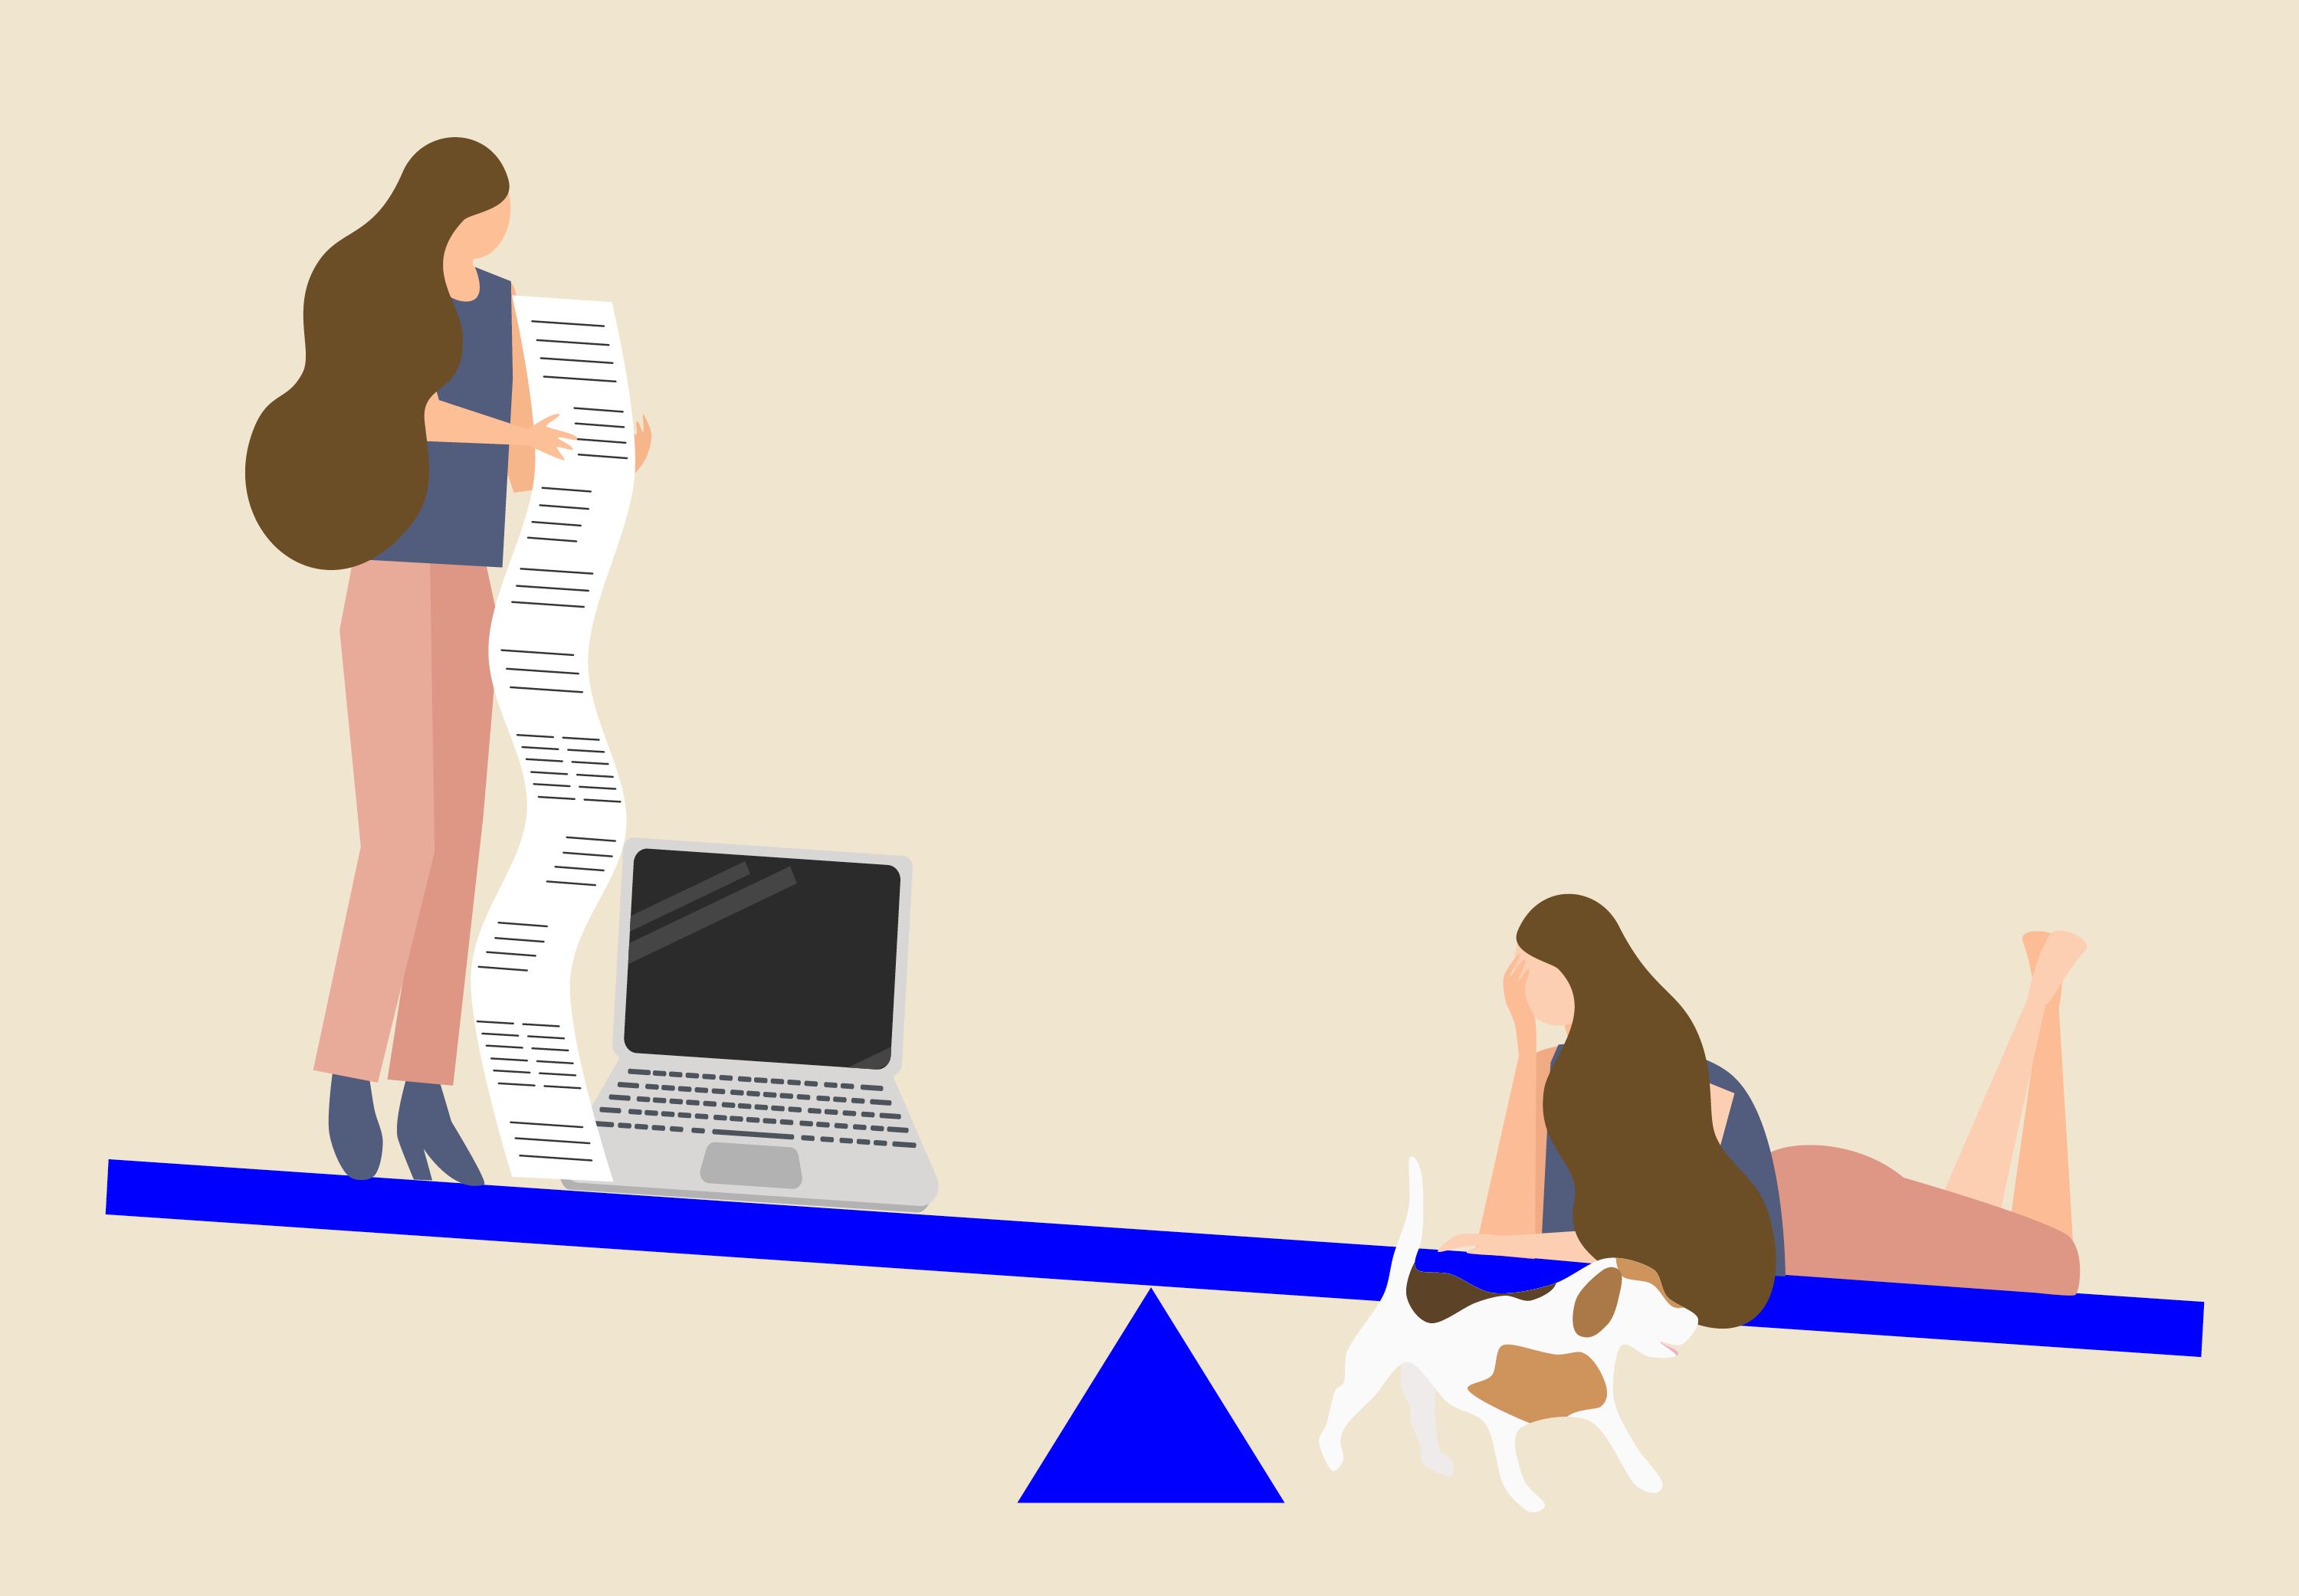 Illustration, hvor to versioner af samme kvinde befinder sig i hver sin ende af en slags balancebom. Den ene står med dokumenter og en computer, mens den anden ligger på maven ved siden af en hund. Bommen hælder ned mod den ende, hvor den liggende kvinde befinder sig.